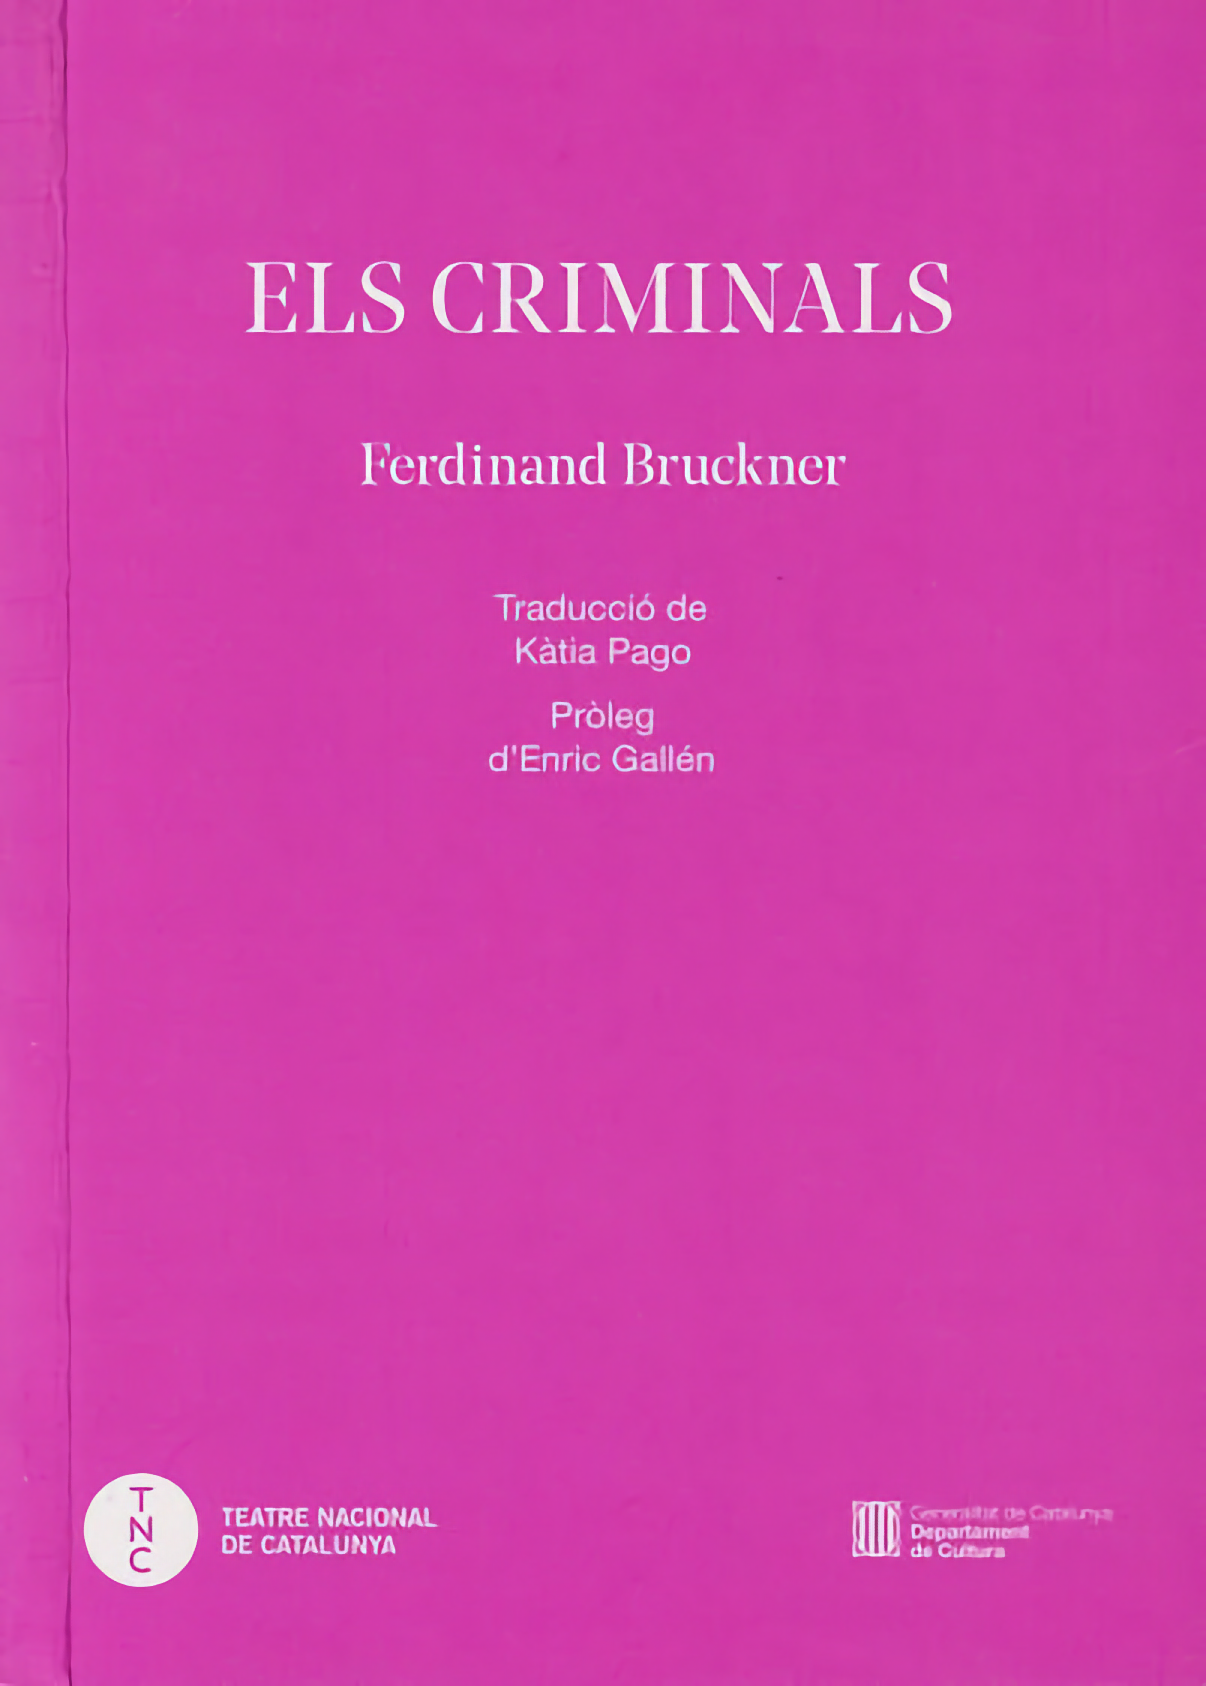 Ferdinand Bruckner: ELS CRIMINALS